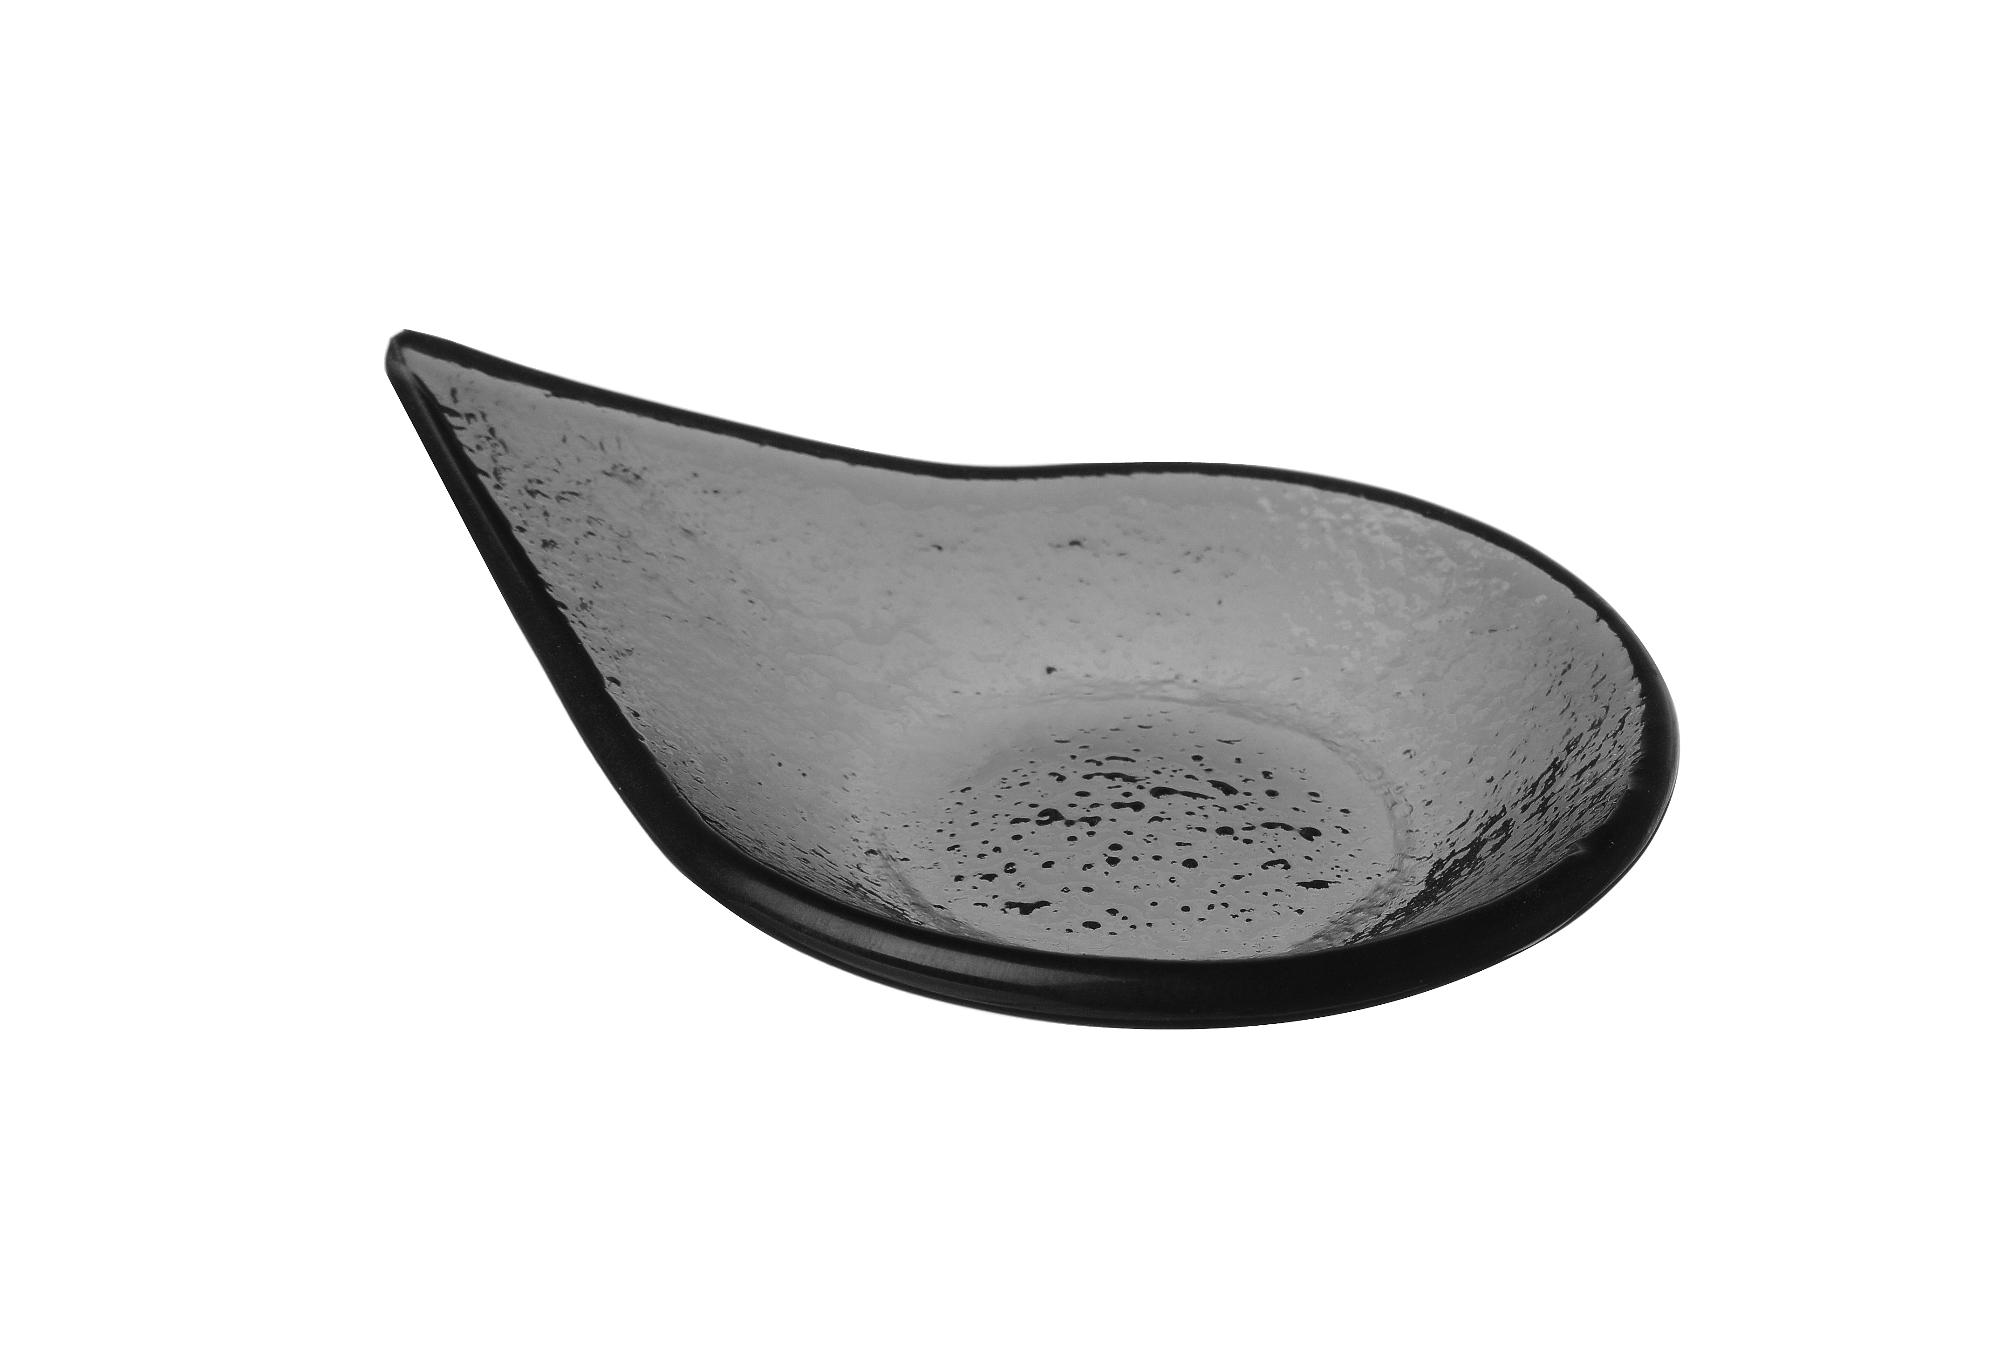 Vetro fingerfood rain drop black glass dish, 80x100mm